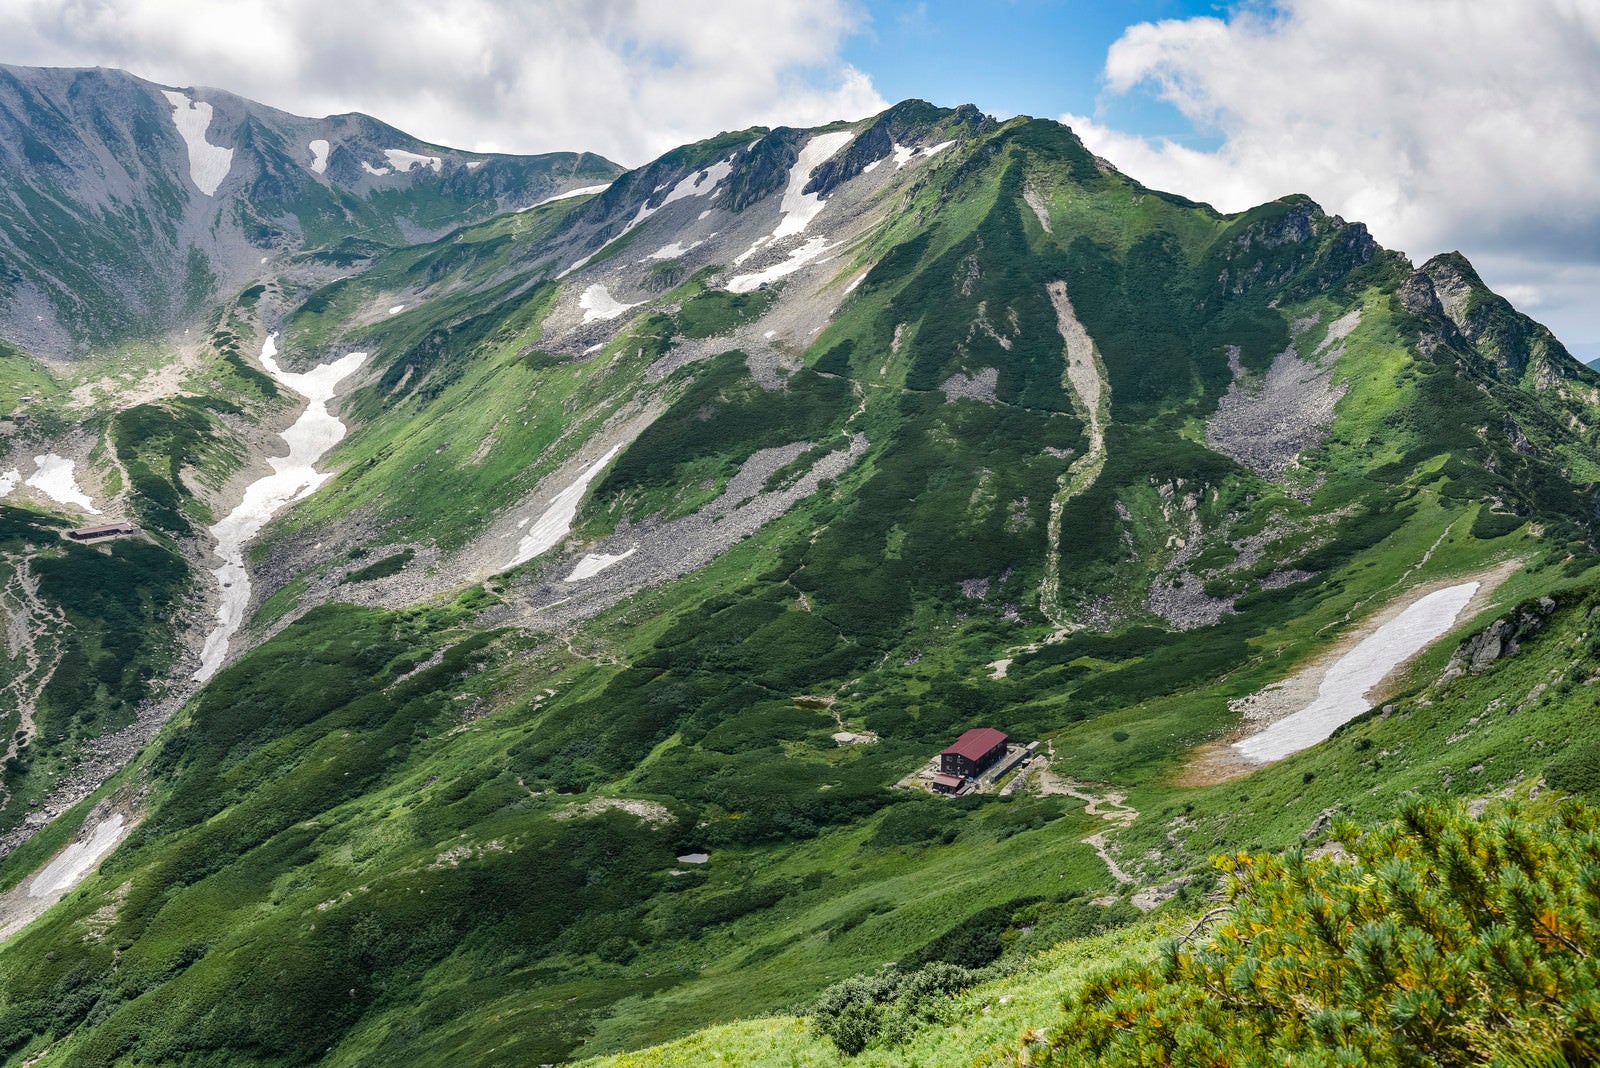 「剱岳別山尾根から見る剣山荘方面」の写真